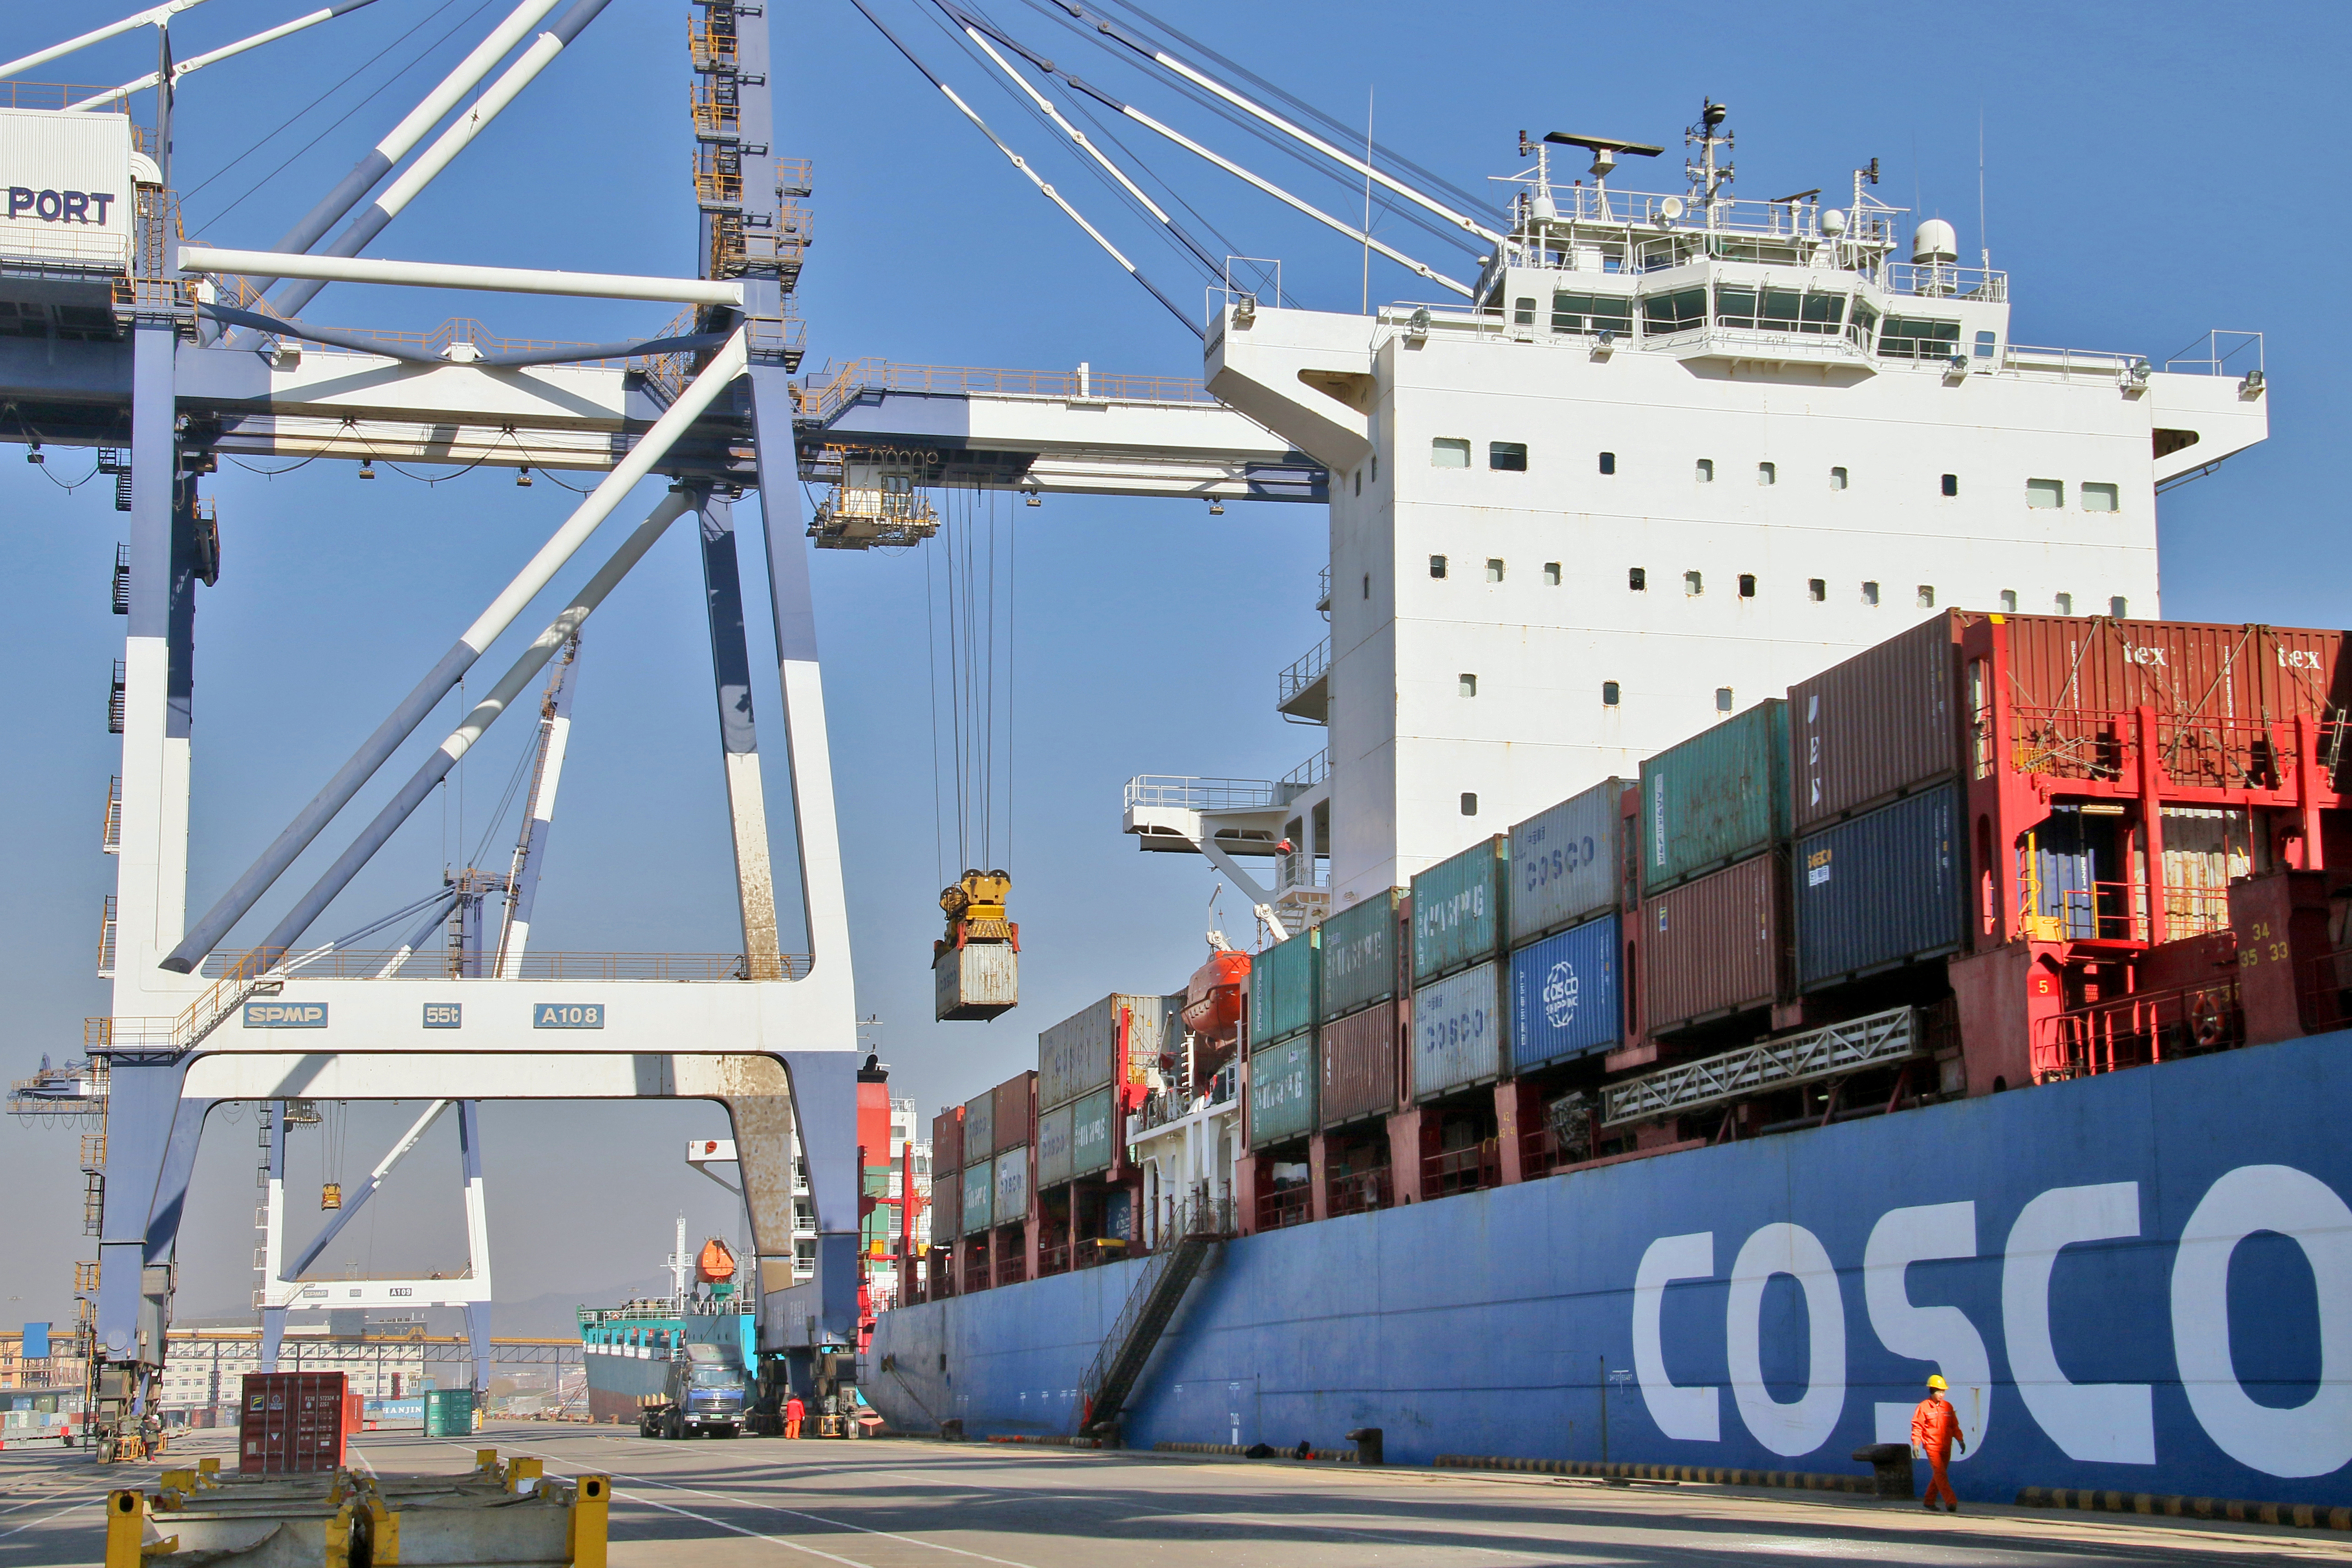 Cosco shipping